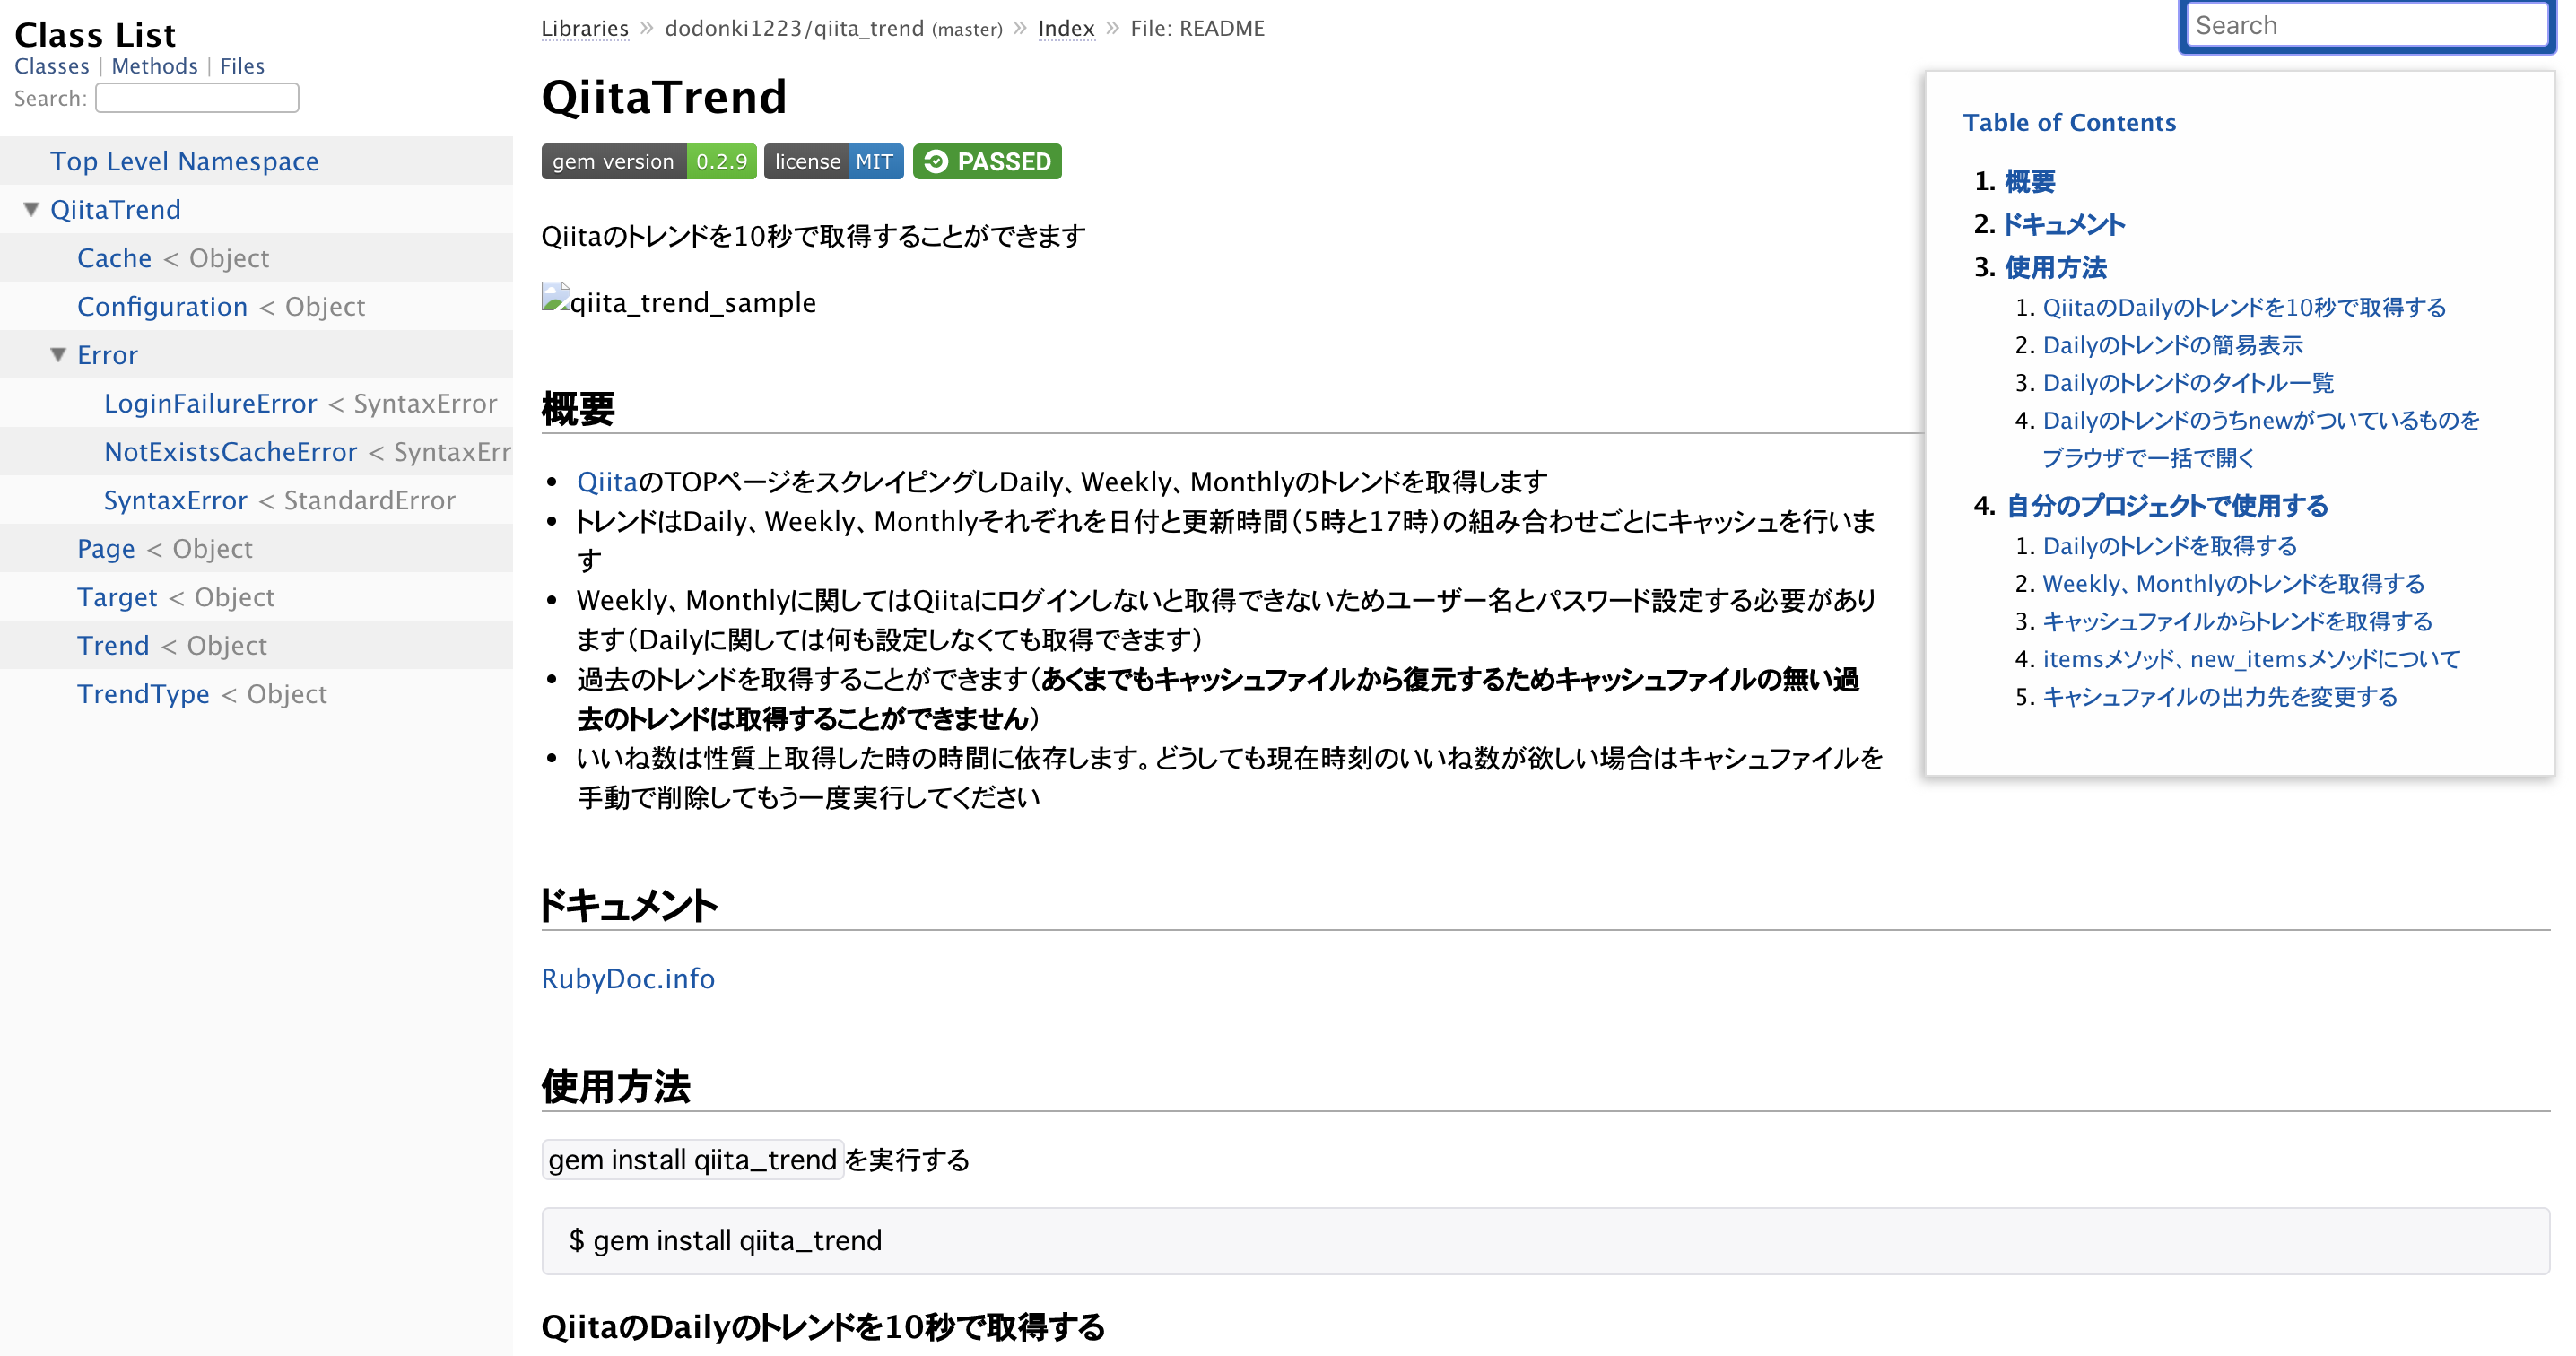 qiita_trend_document